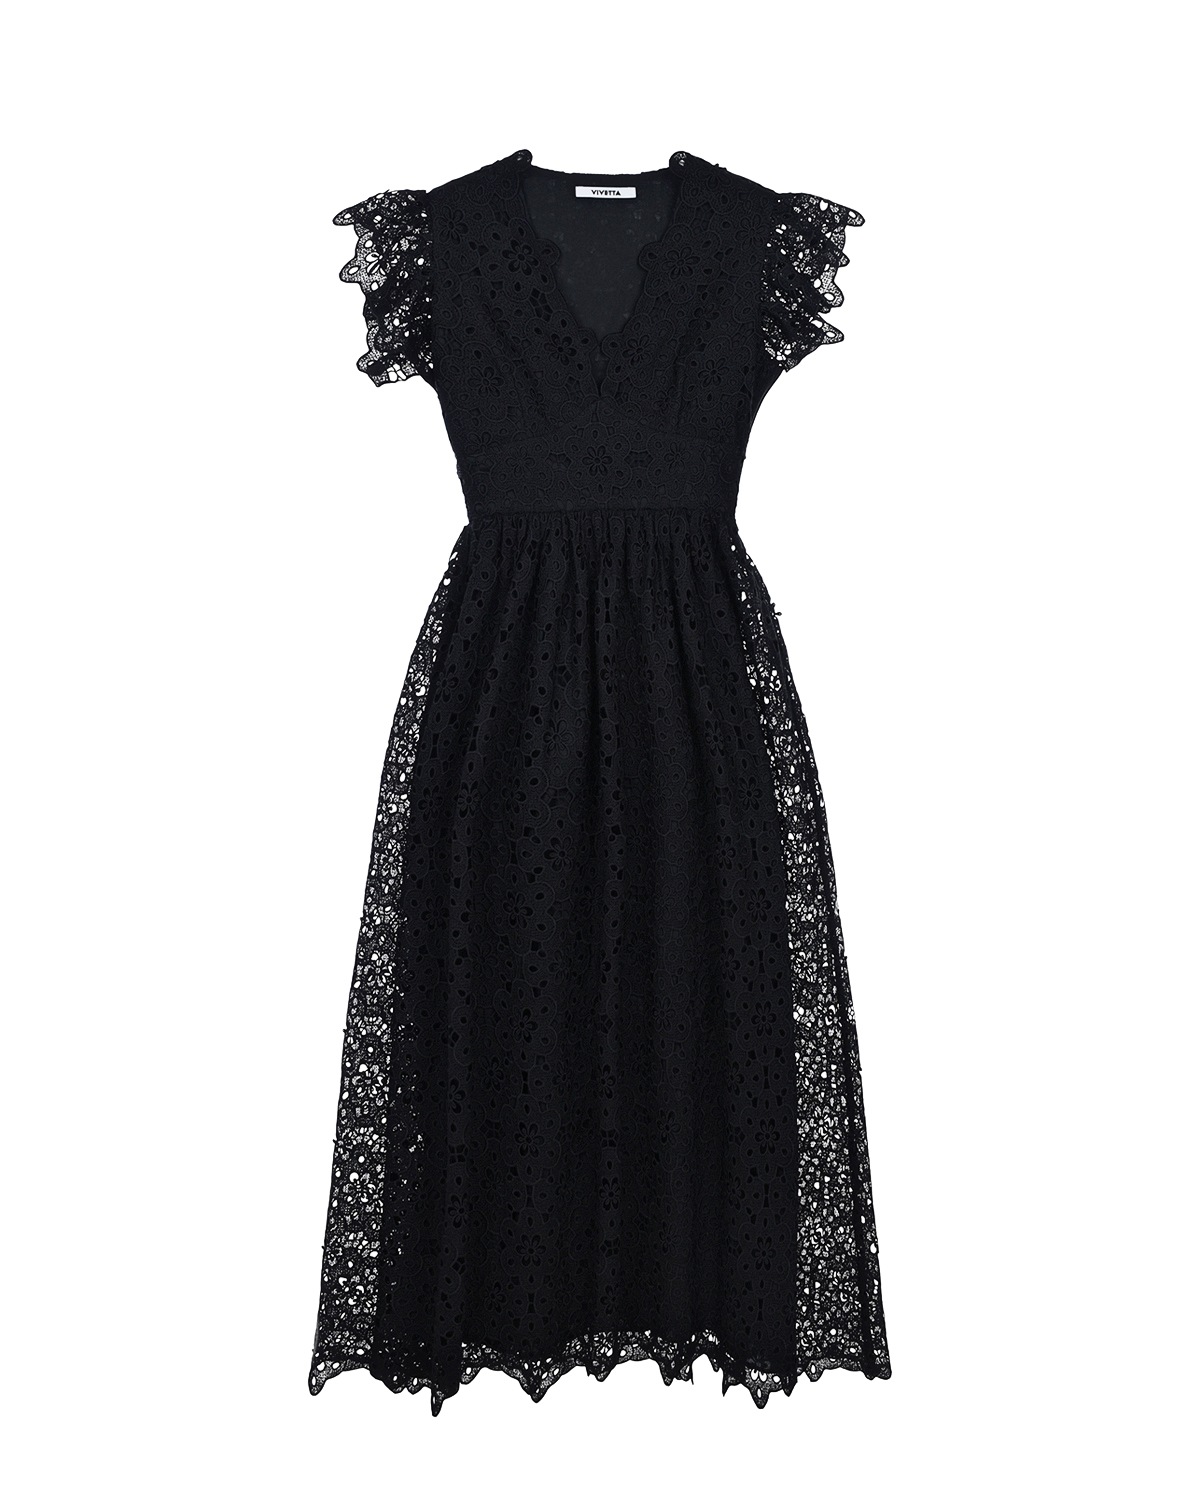 Приталенное черное платье Vivetta, размер 44, цвет черный - фото 1